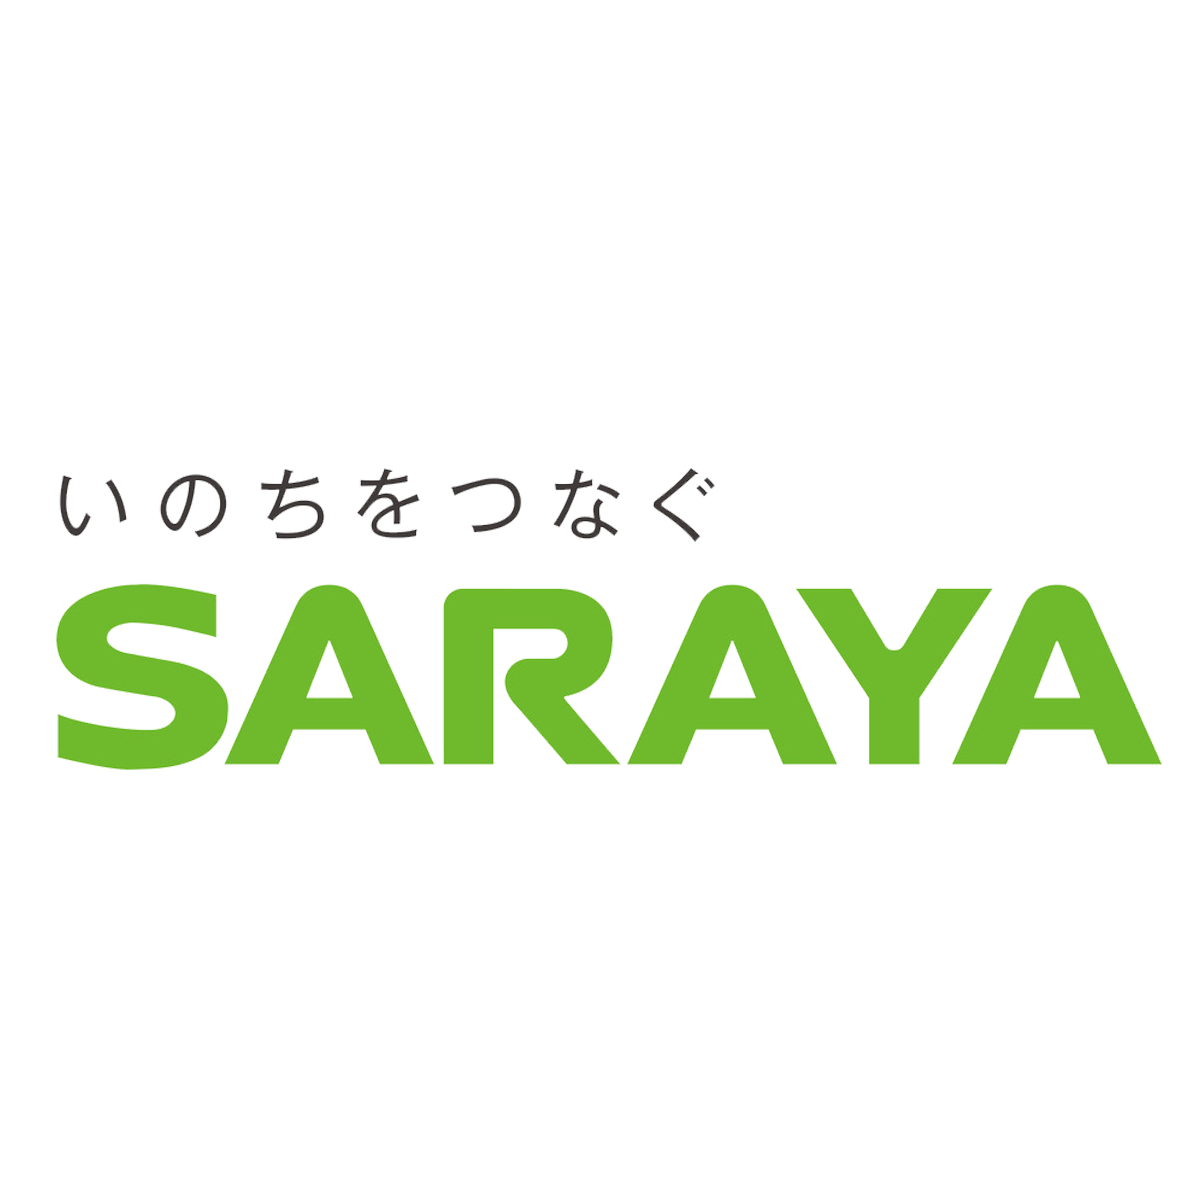 サラヤ株式会社